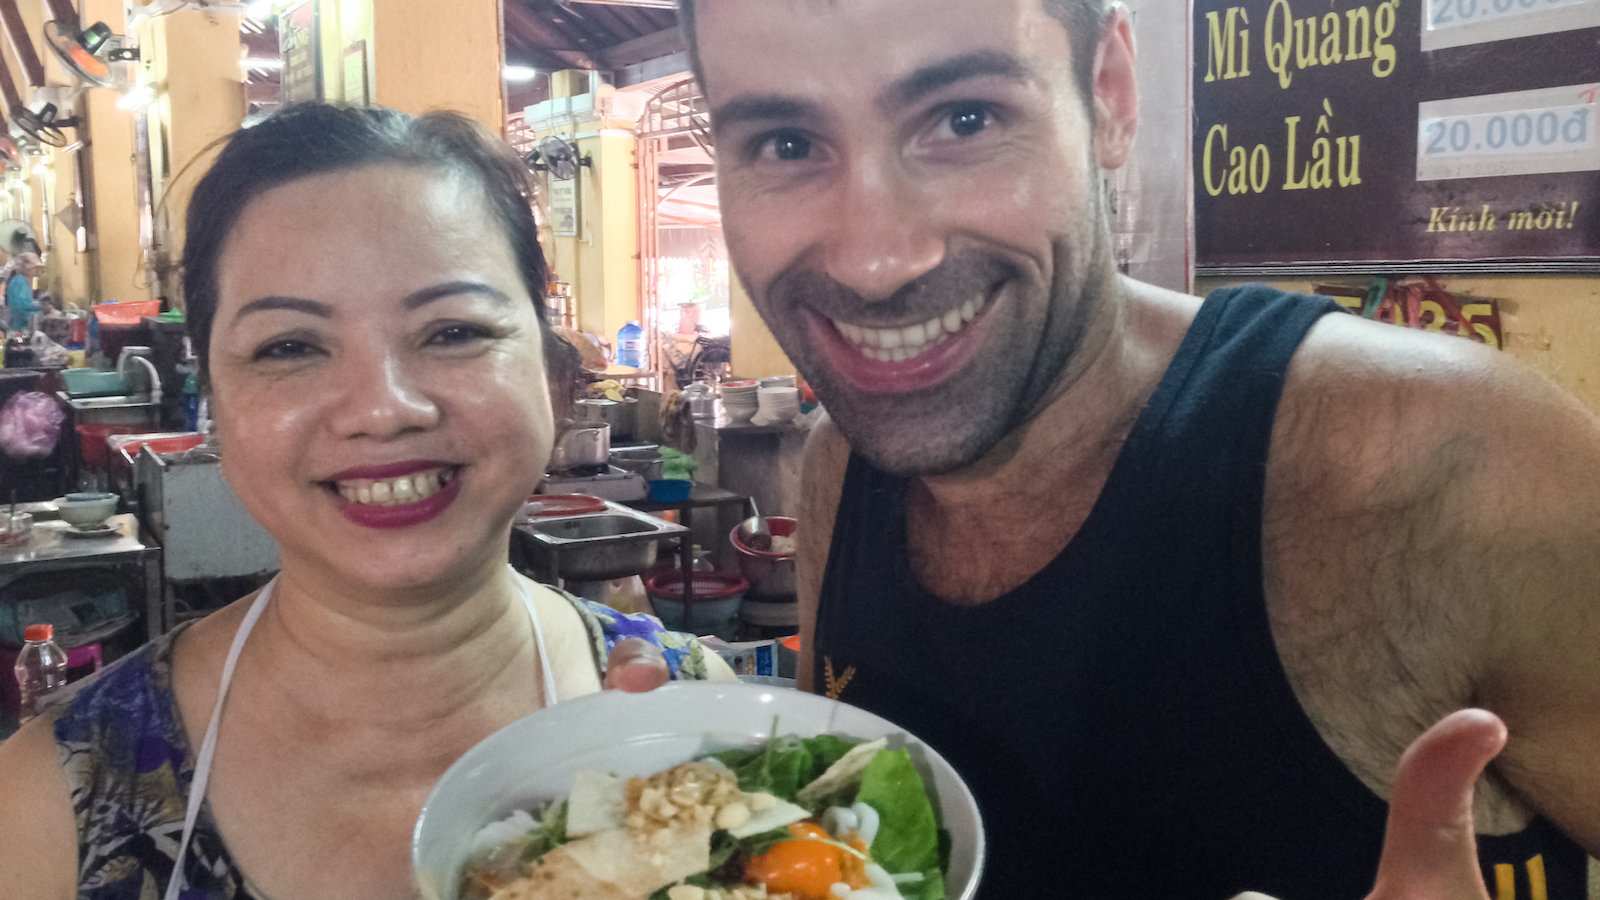 Mi quang é uma sopa deliciosa com macarrão e carne do Vietnã que adoramos